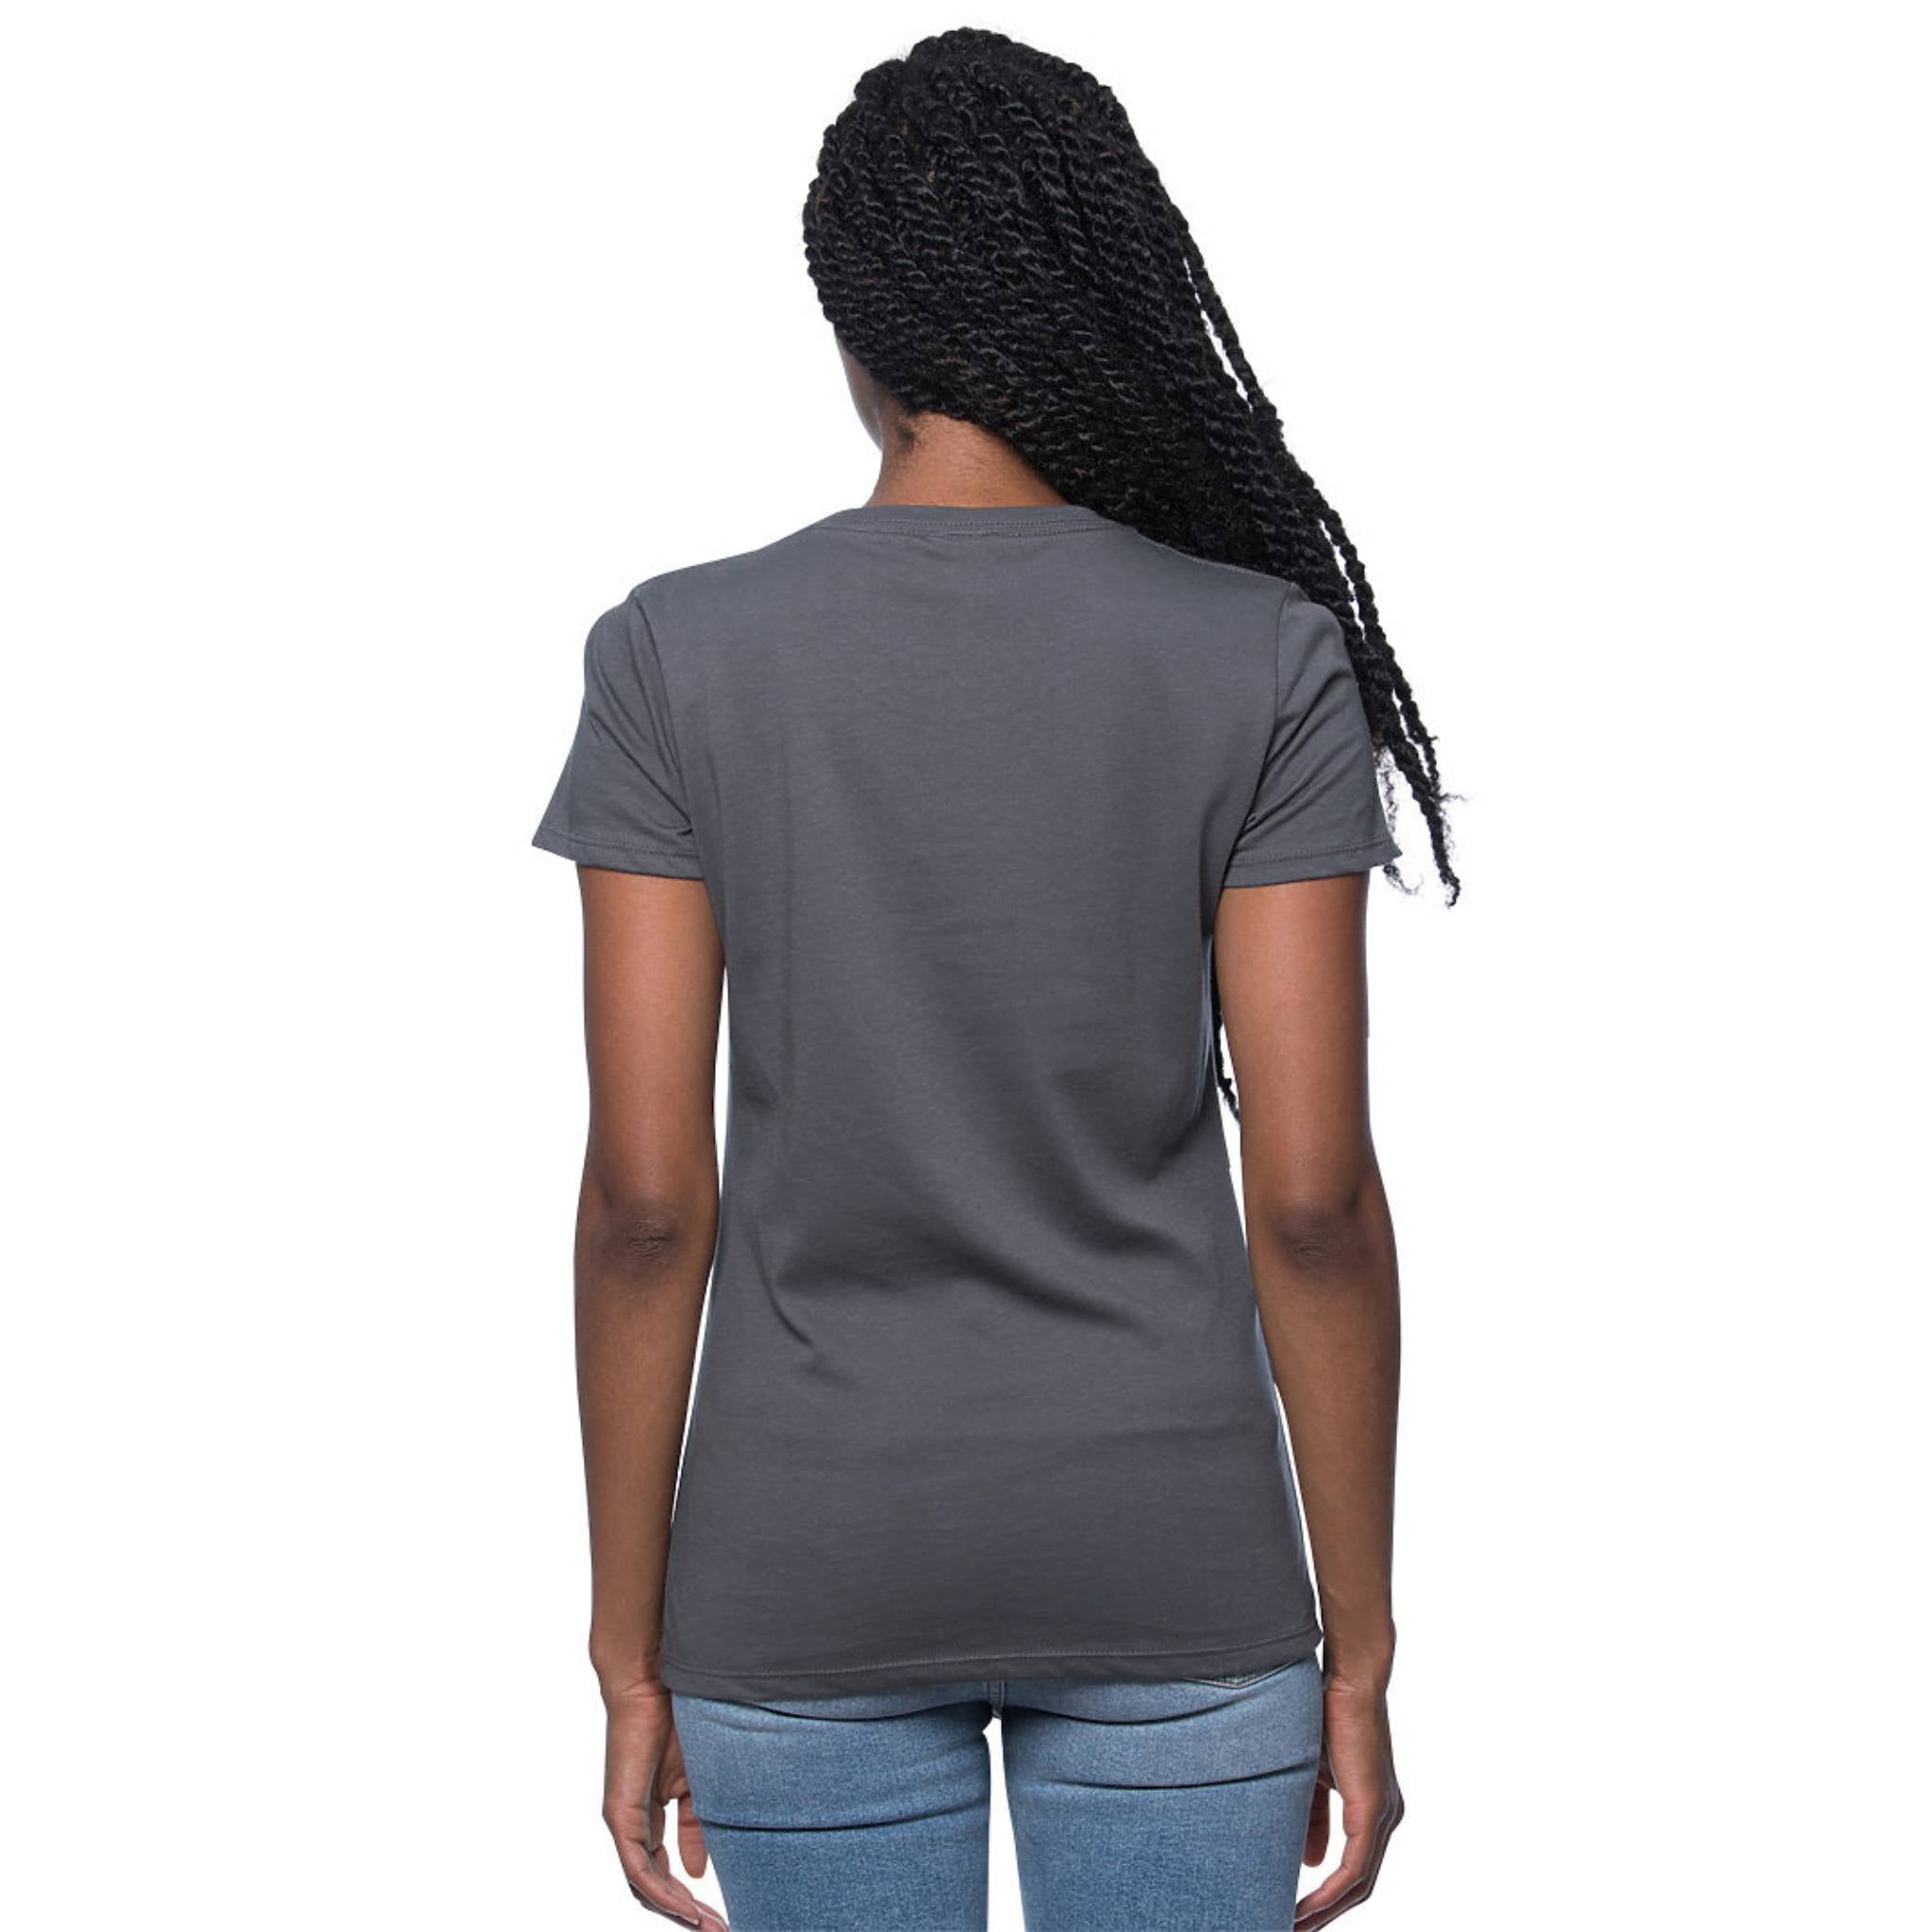 Women Organic Cotton T-Shirt